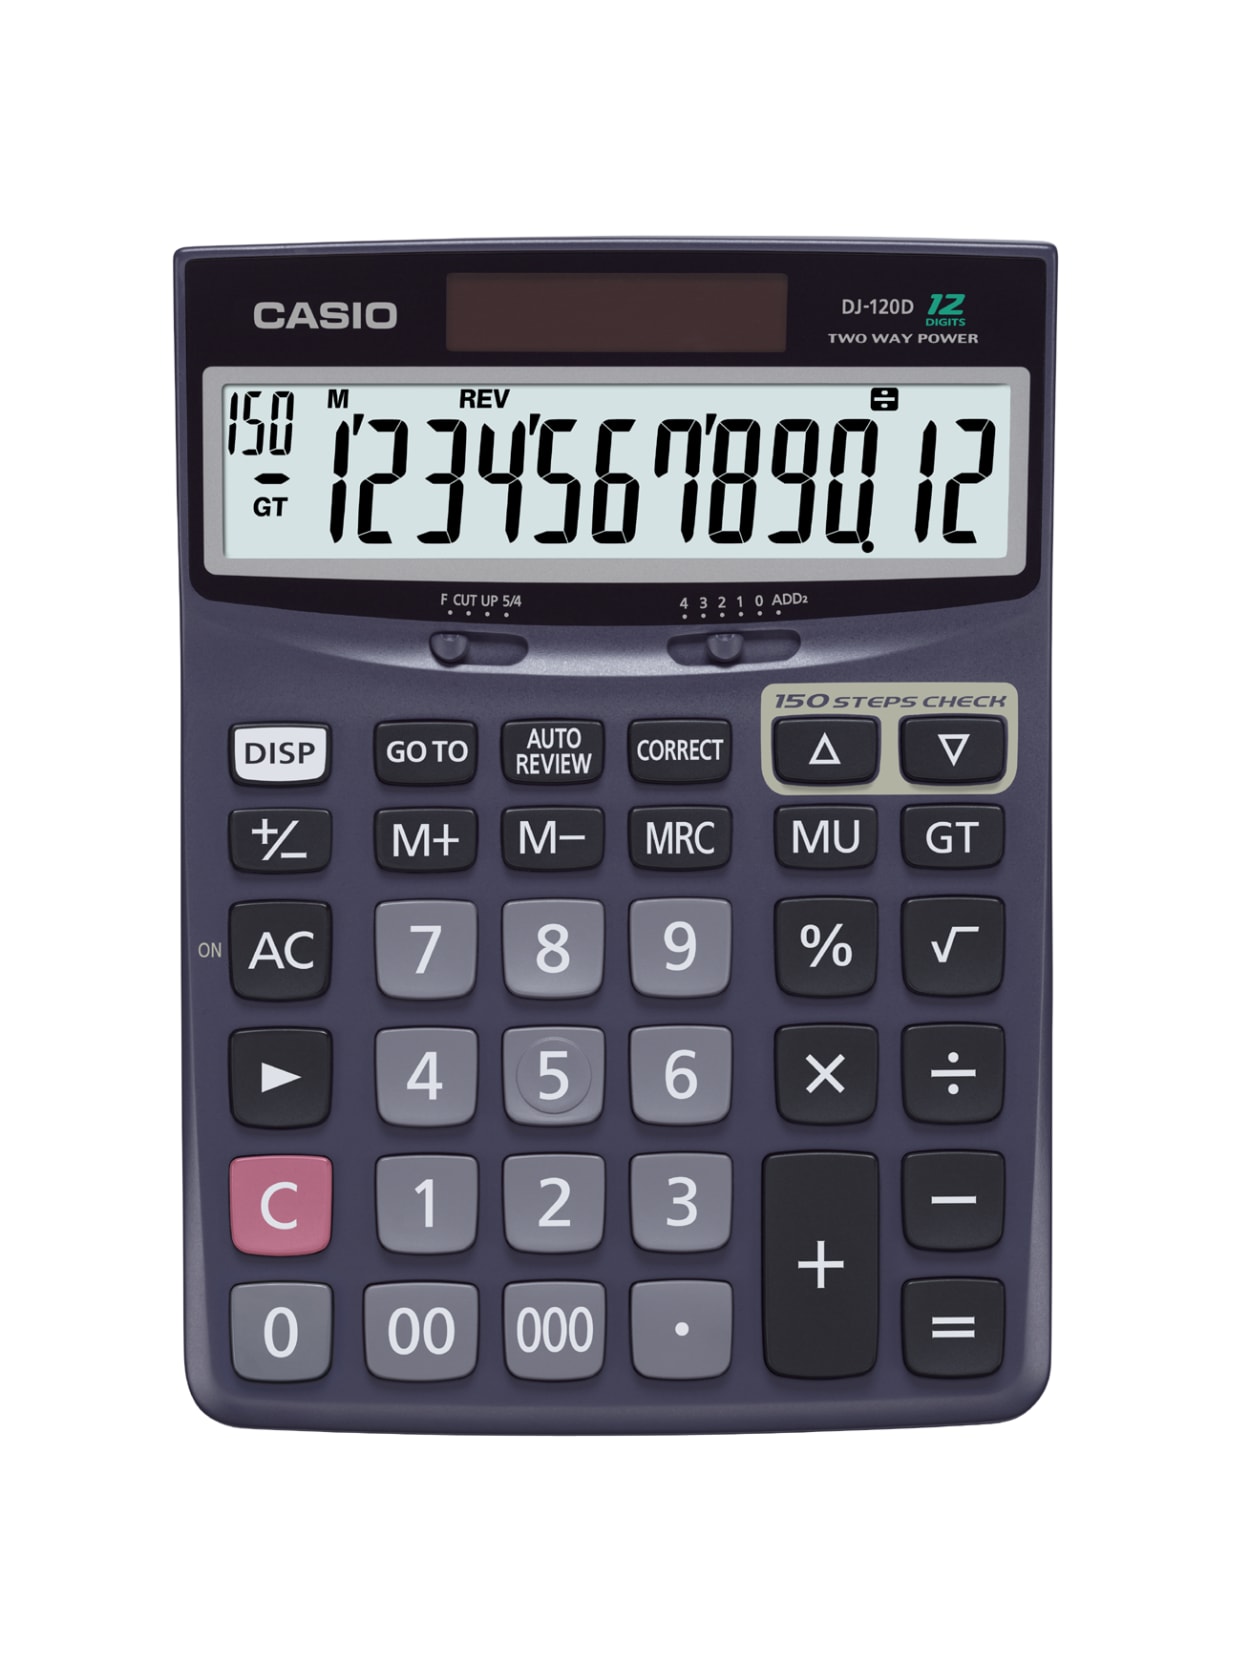 Casio Check And Correct Desk Calculator 1 37 X 5 51 X 7 51 Black